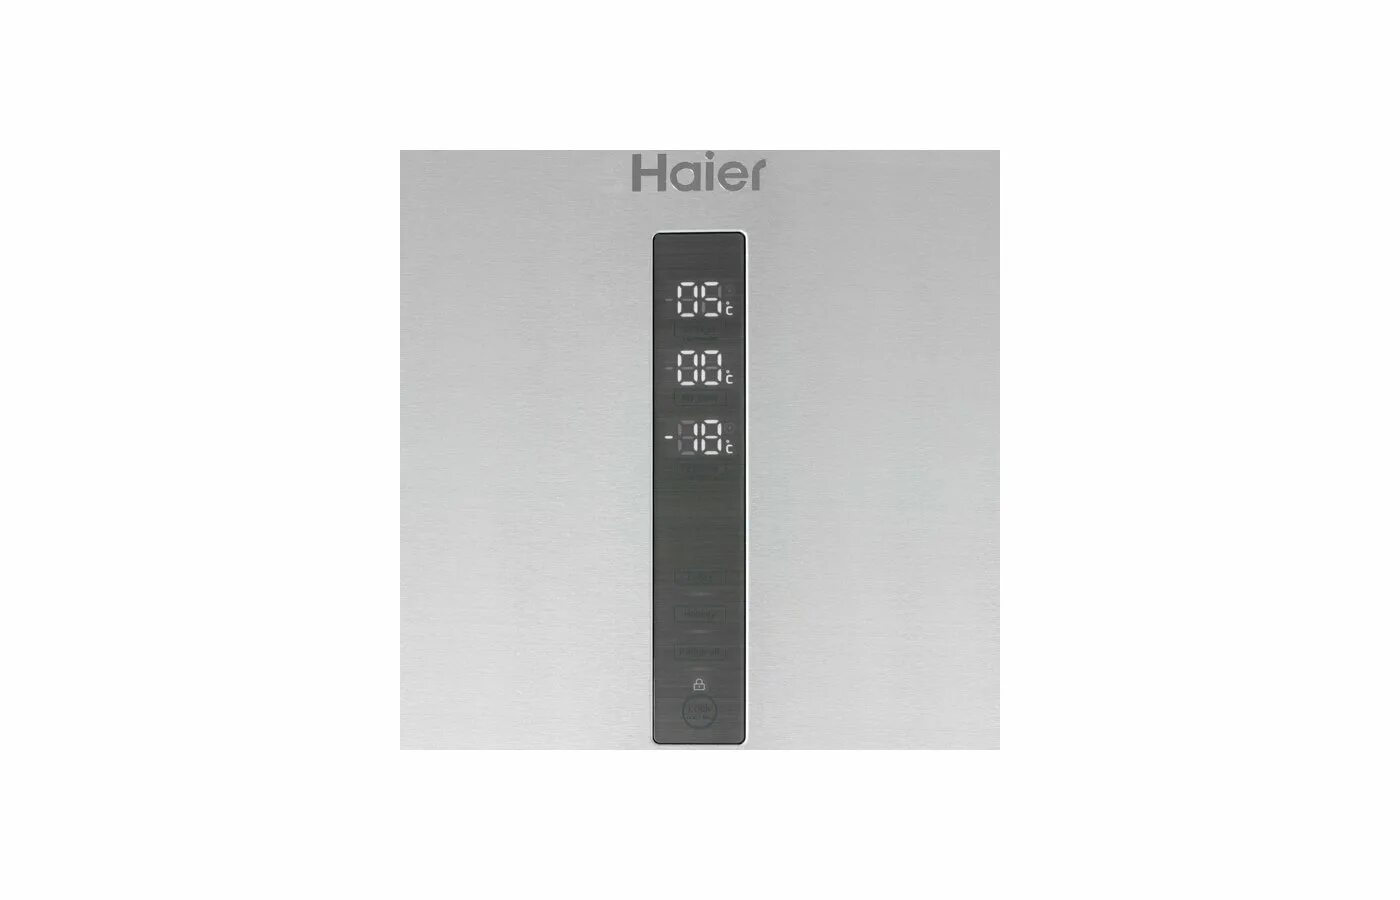 Холодильник Haier a3fe742cmjru. Холодильник Haier cef535asg. Холодильник Haier a4f639cxmvu1. Холодильник Haier c4f640cwu1 панель управления. Airplay haier